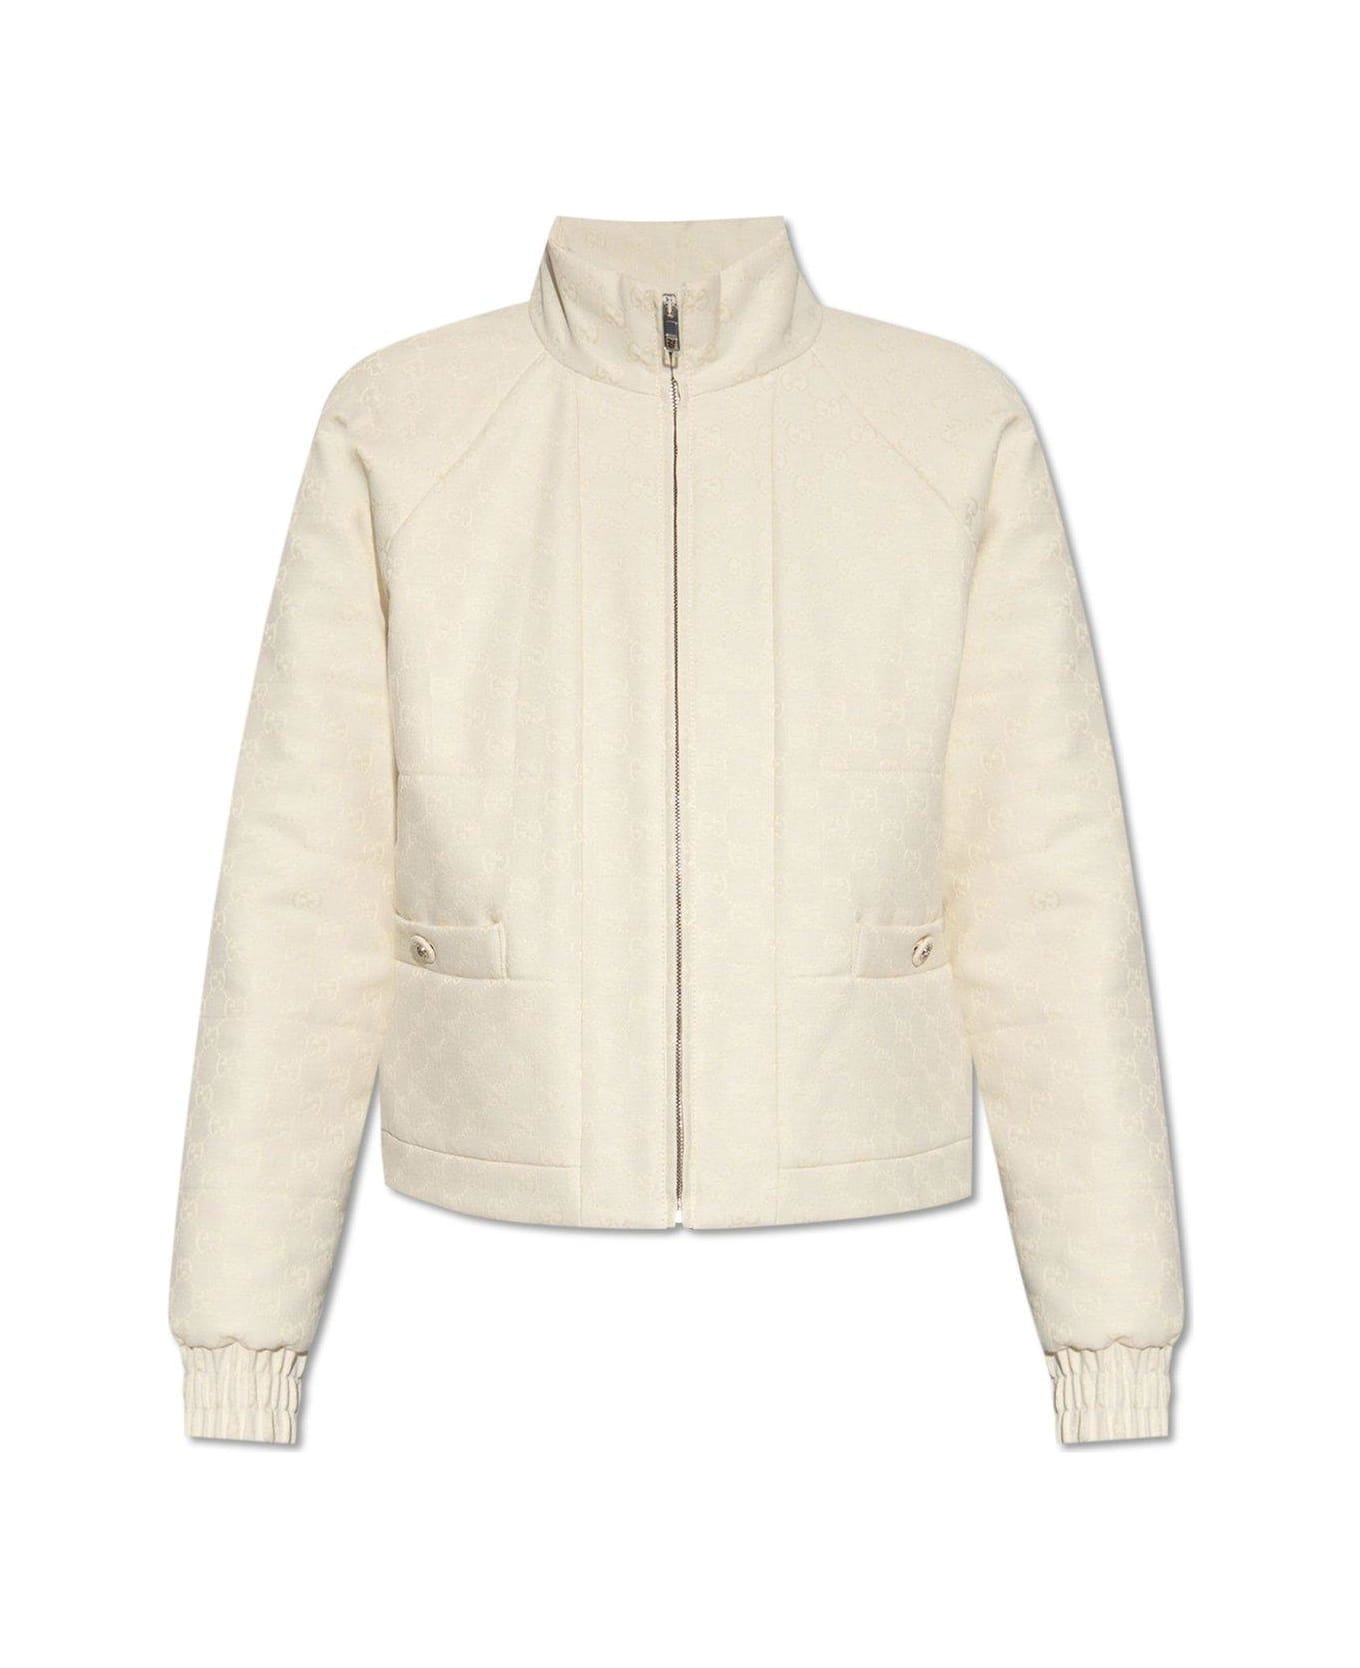 Gucci Monogrammed Zip-up Jacket - Beige